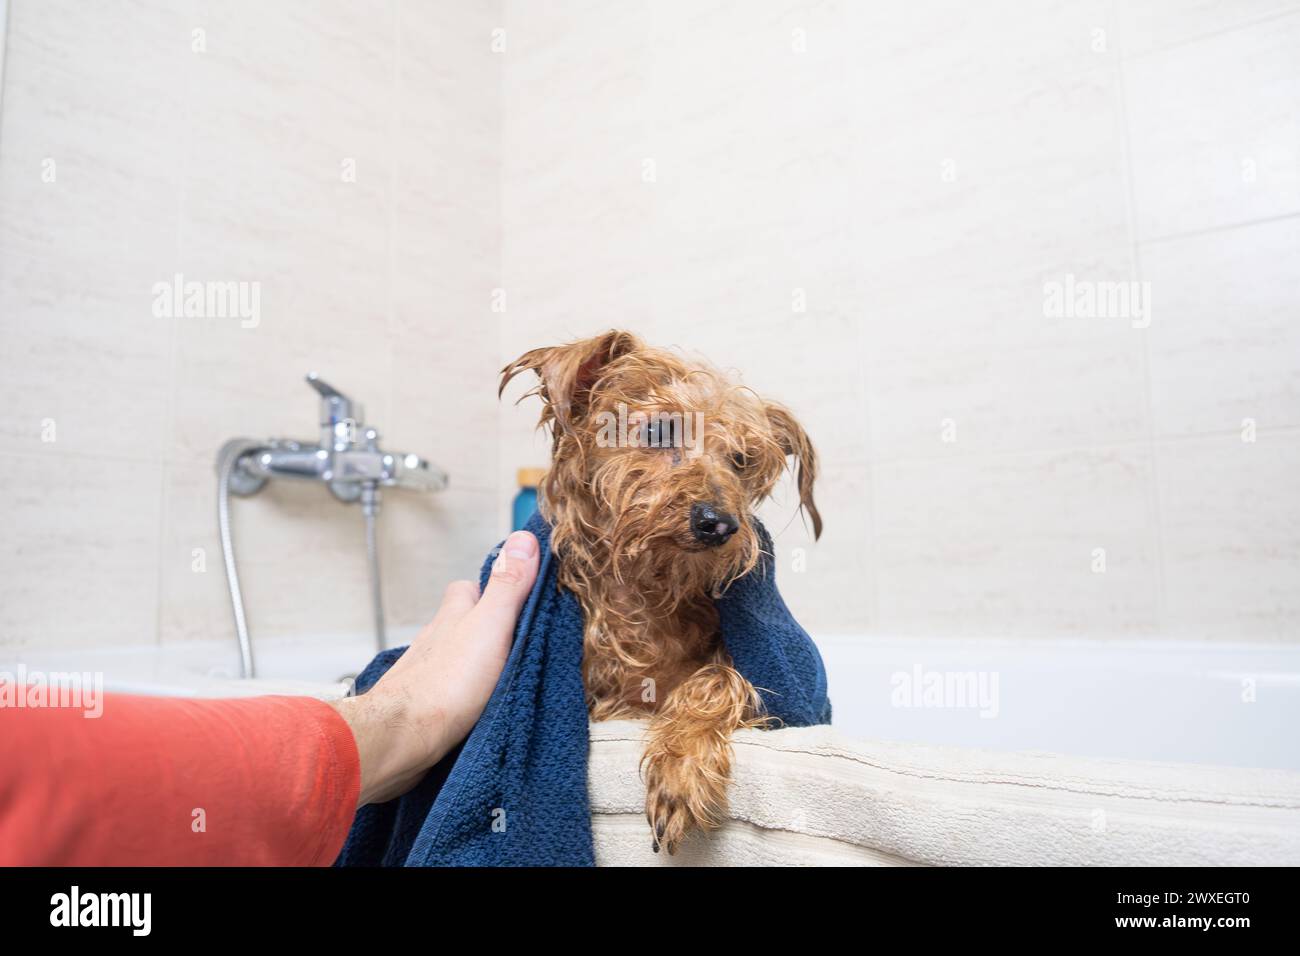 Die Hand eines Mannes trocknet sein Haustier nach dem Bad mit einem blauen Handtuch. Der kleine Hund ist ein brauner Mischling und ist nass. Liebe und Pflege für Haustiere zu Hause. Stockfoto